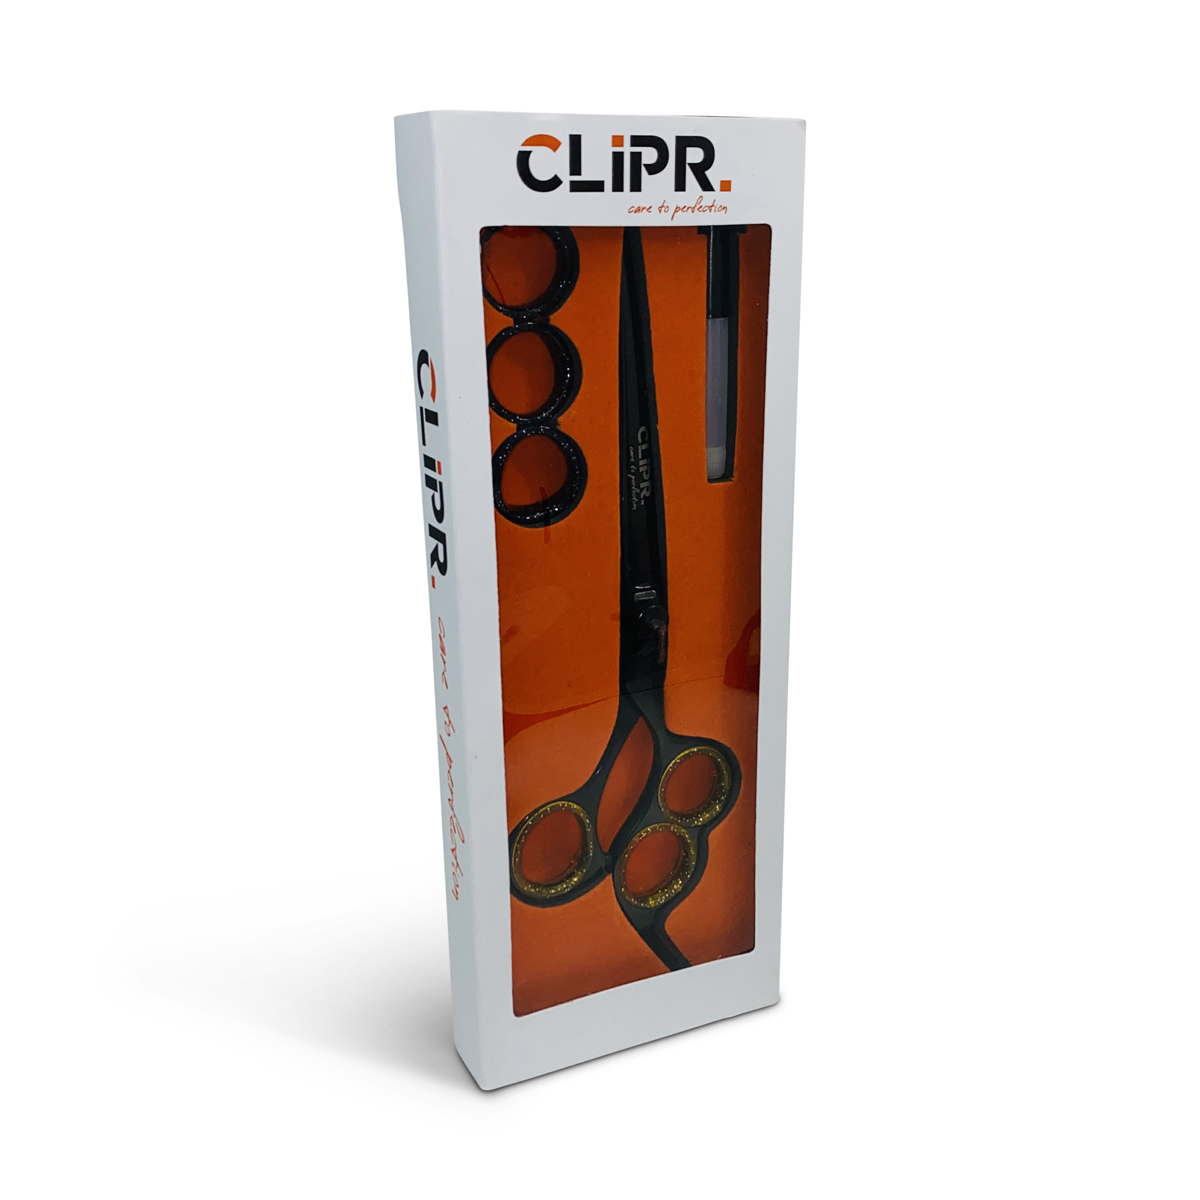 Clipr Scisr RazorEdge Ergo 3 Vingerogen trimschaar rechtshandig recht 8.5"